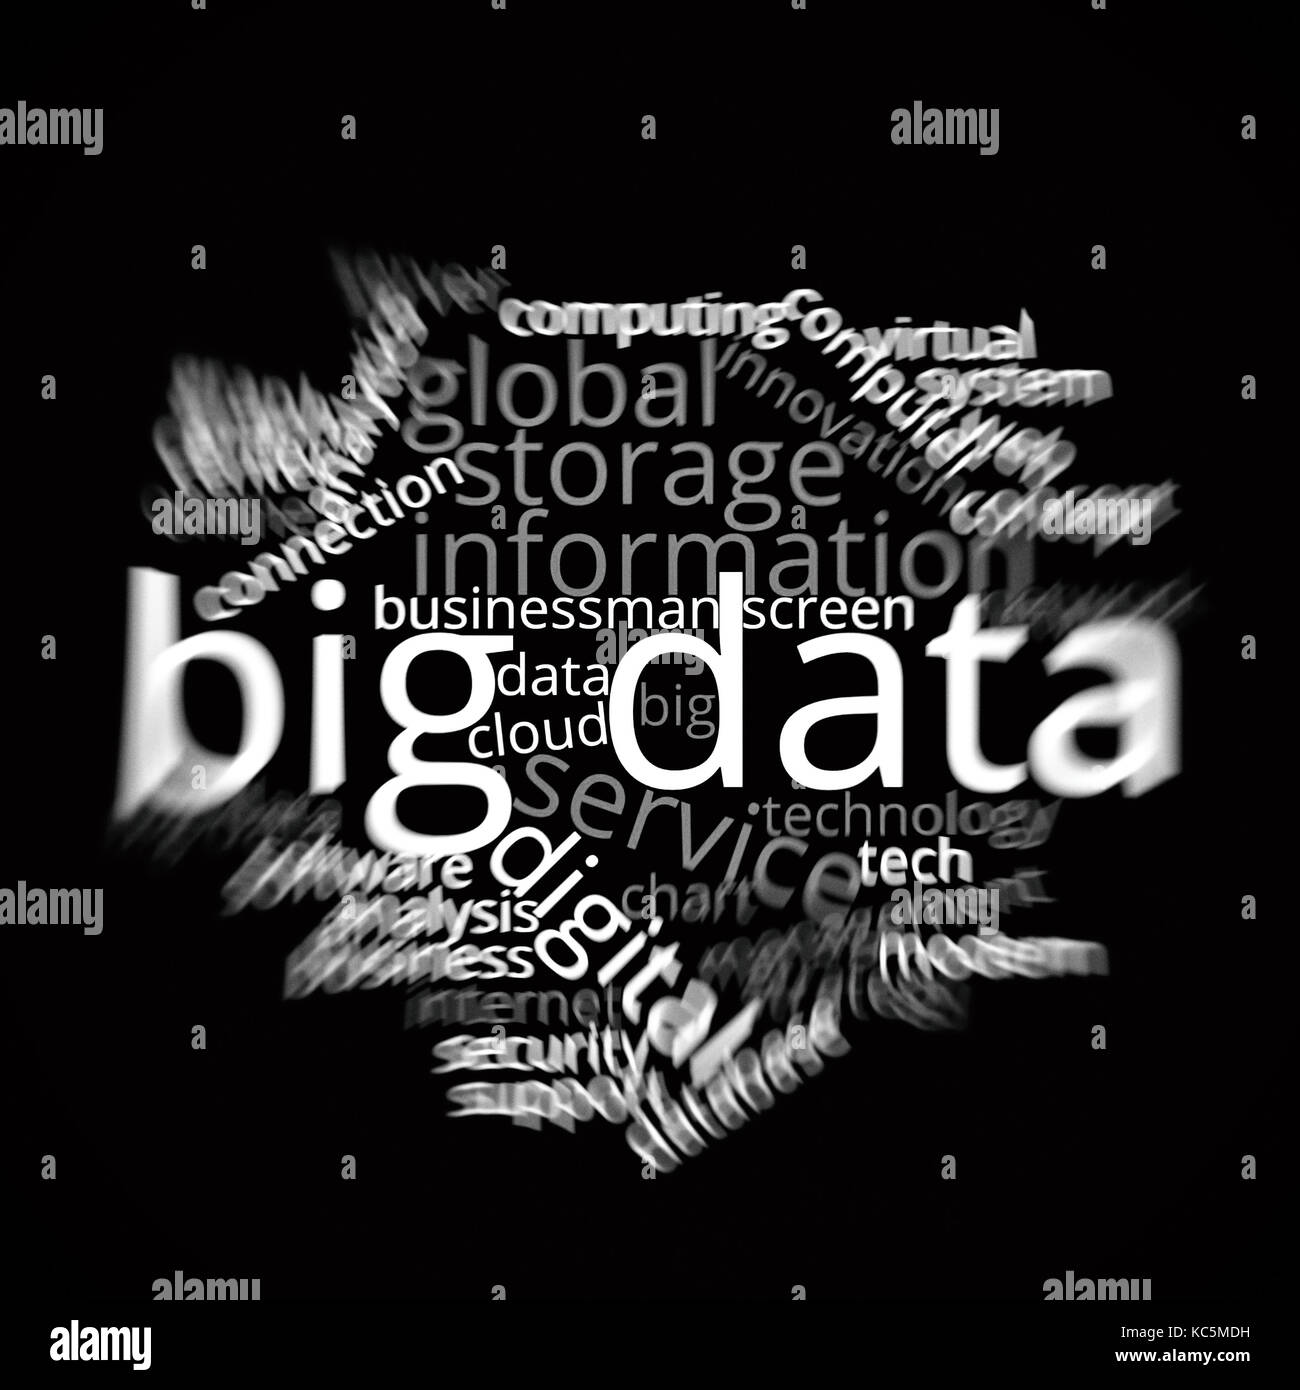 Gran palabra de datos utilizando la nube informática y tecnología basada temas e ideas Foto de stock